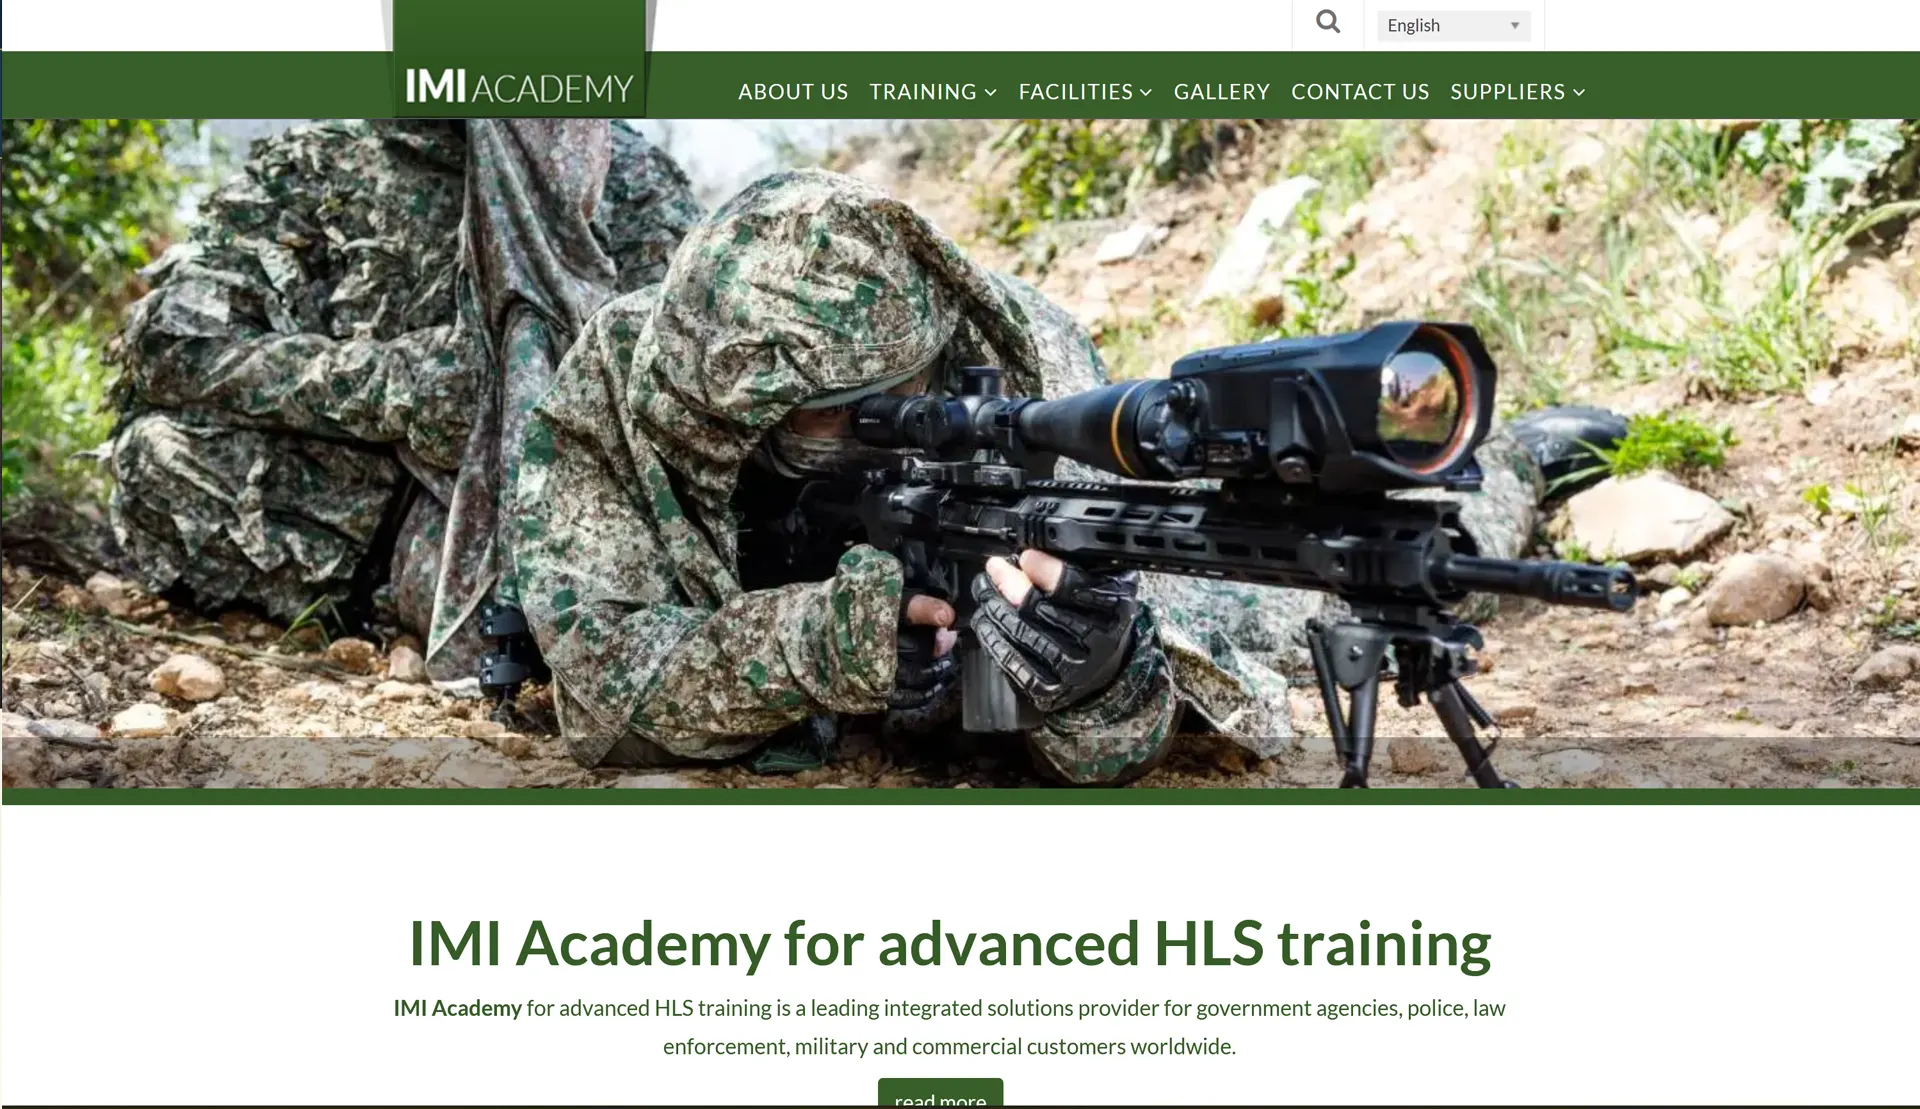 IMI Academy